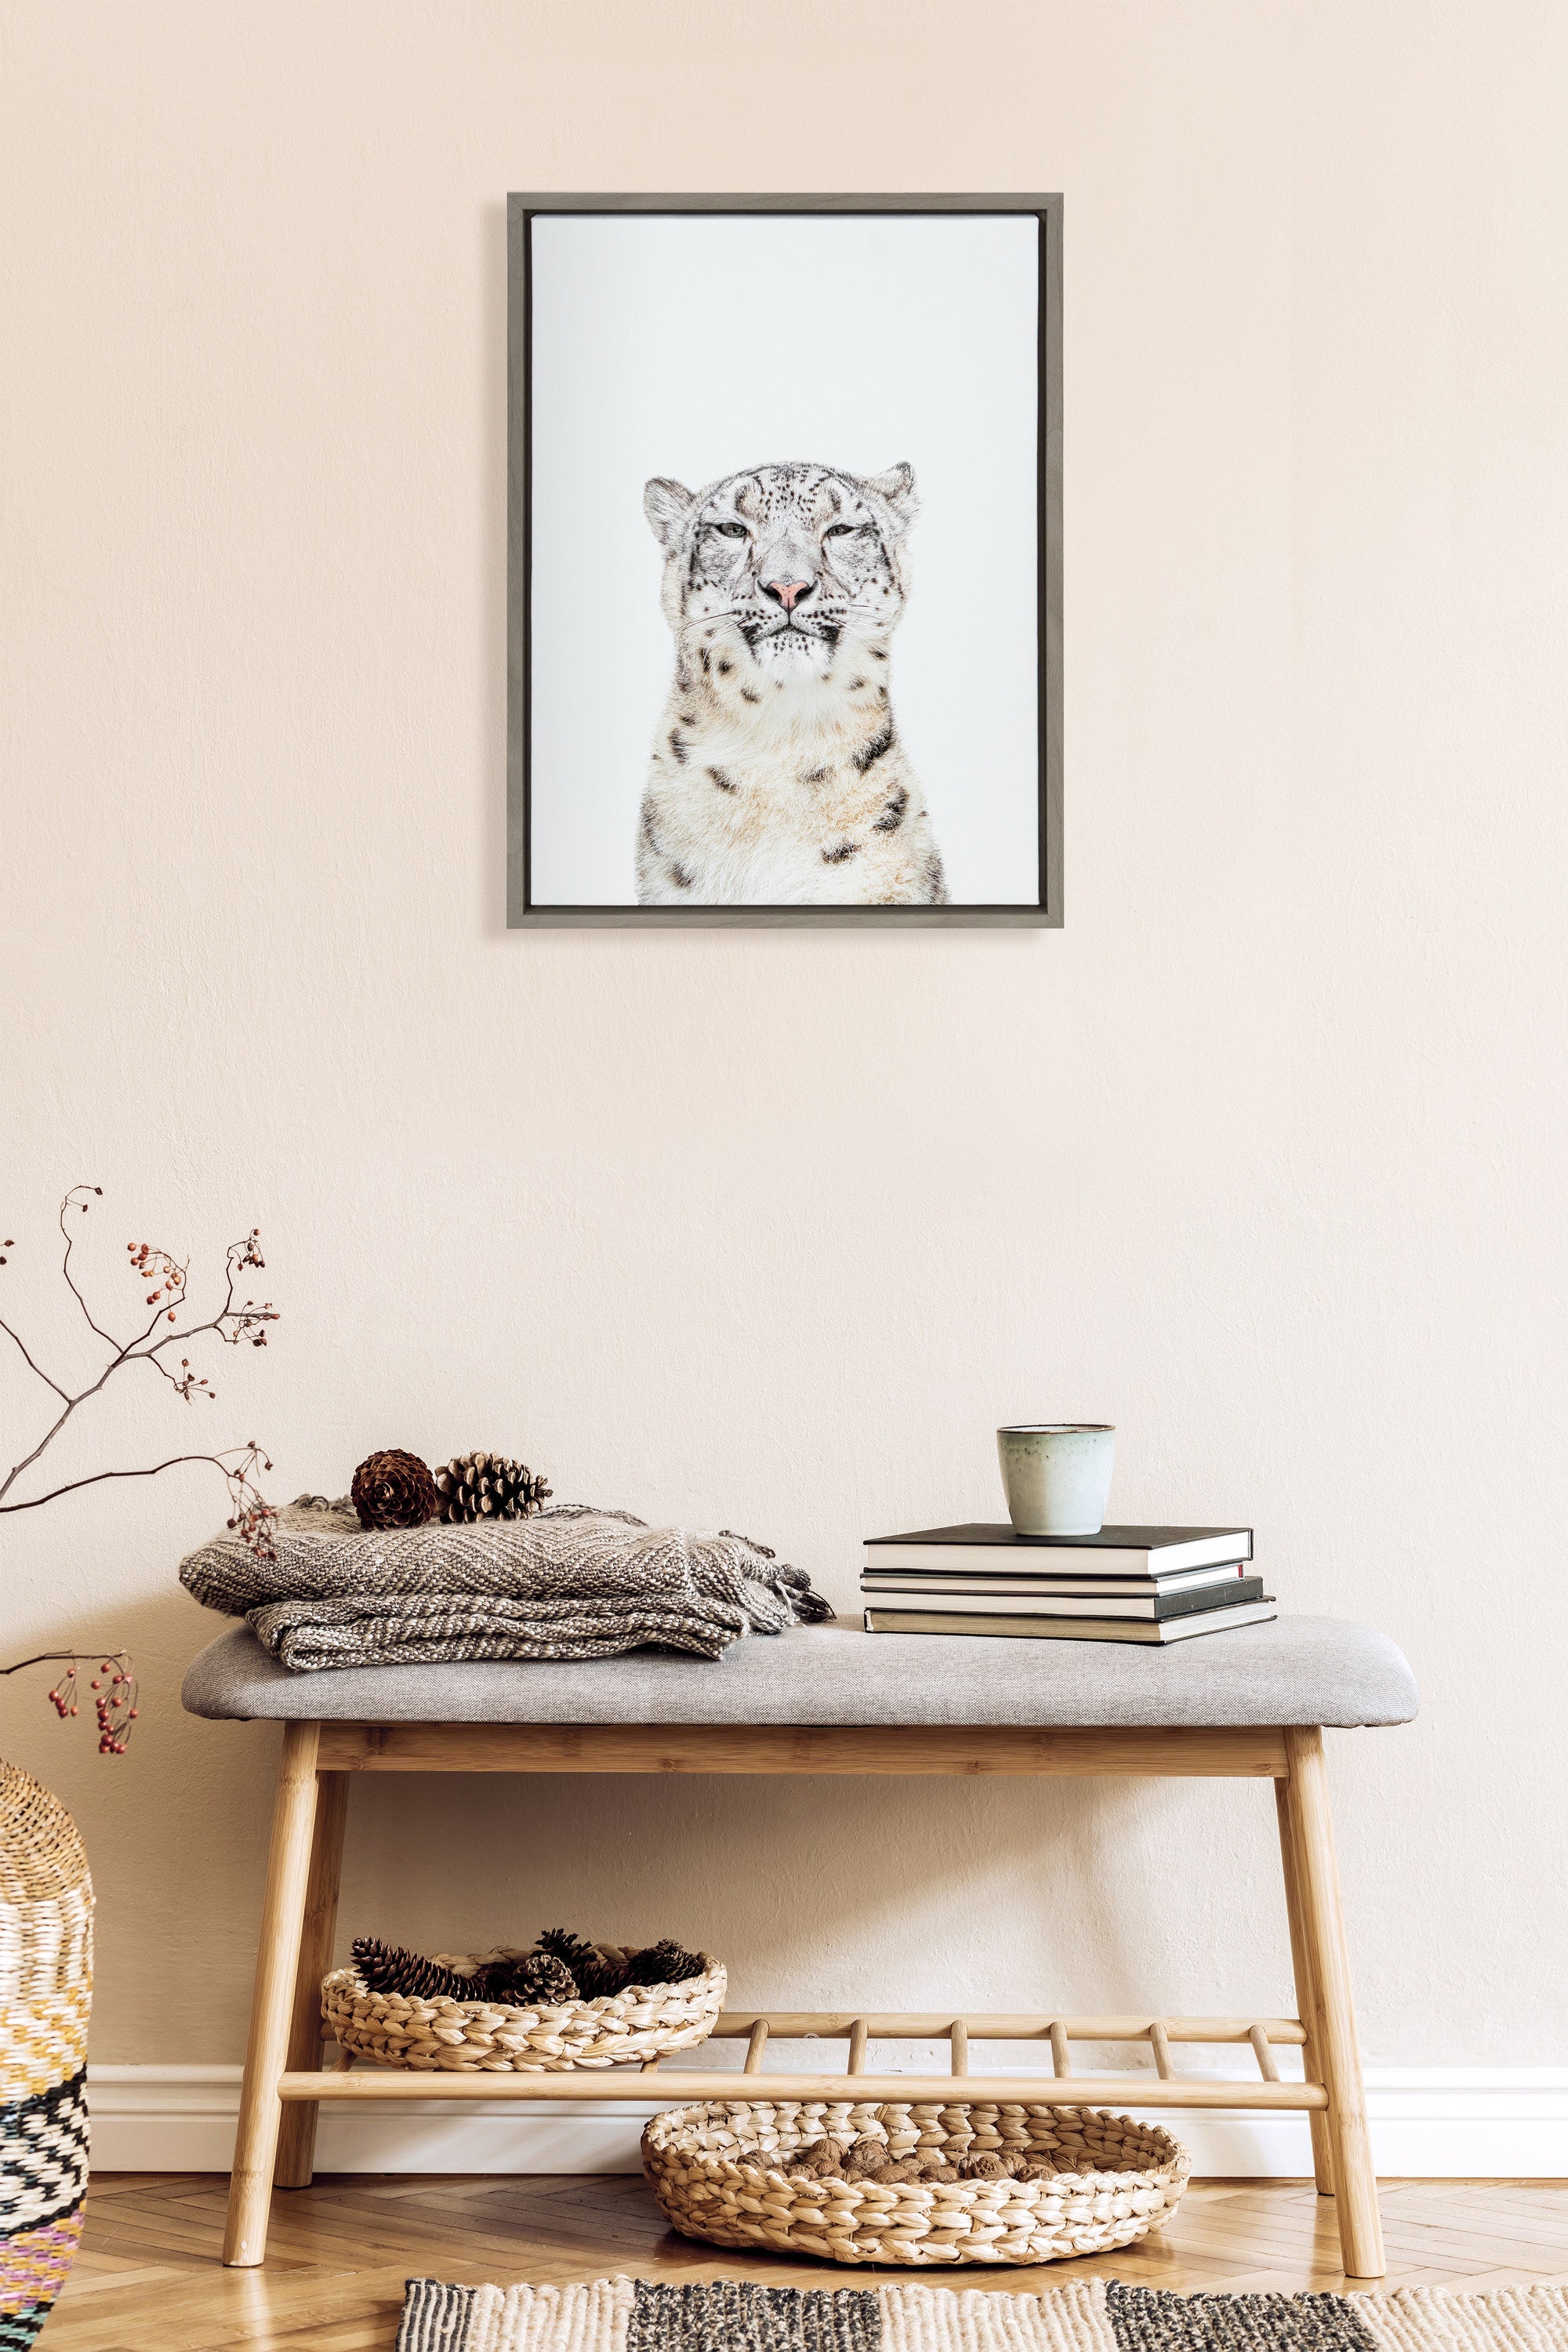 Sylvie Snow Leopard Portrait Framed Canvas by Amy Peterson Art Studio